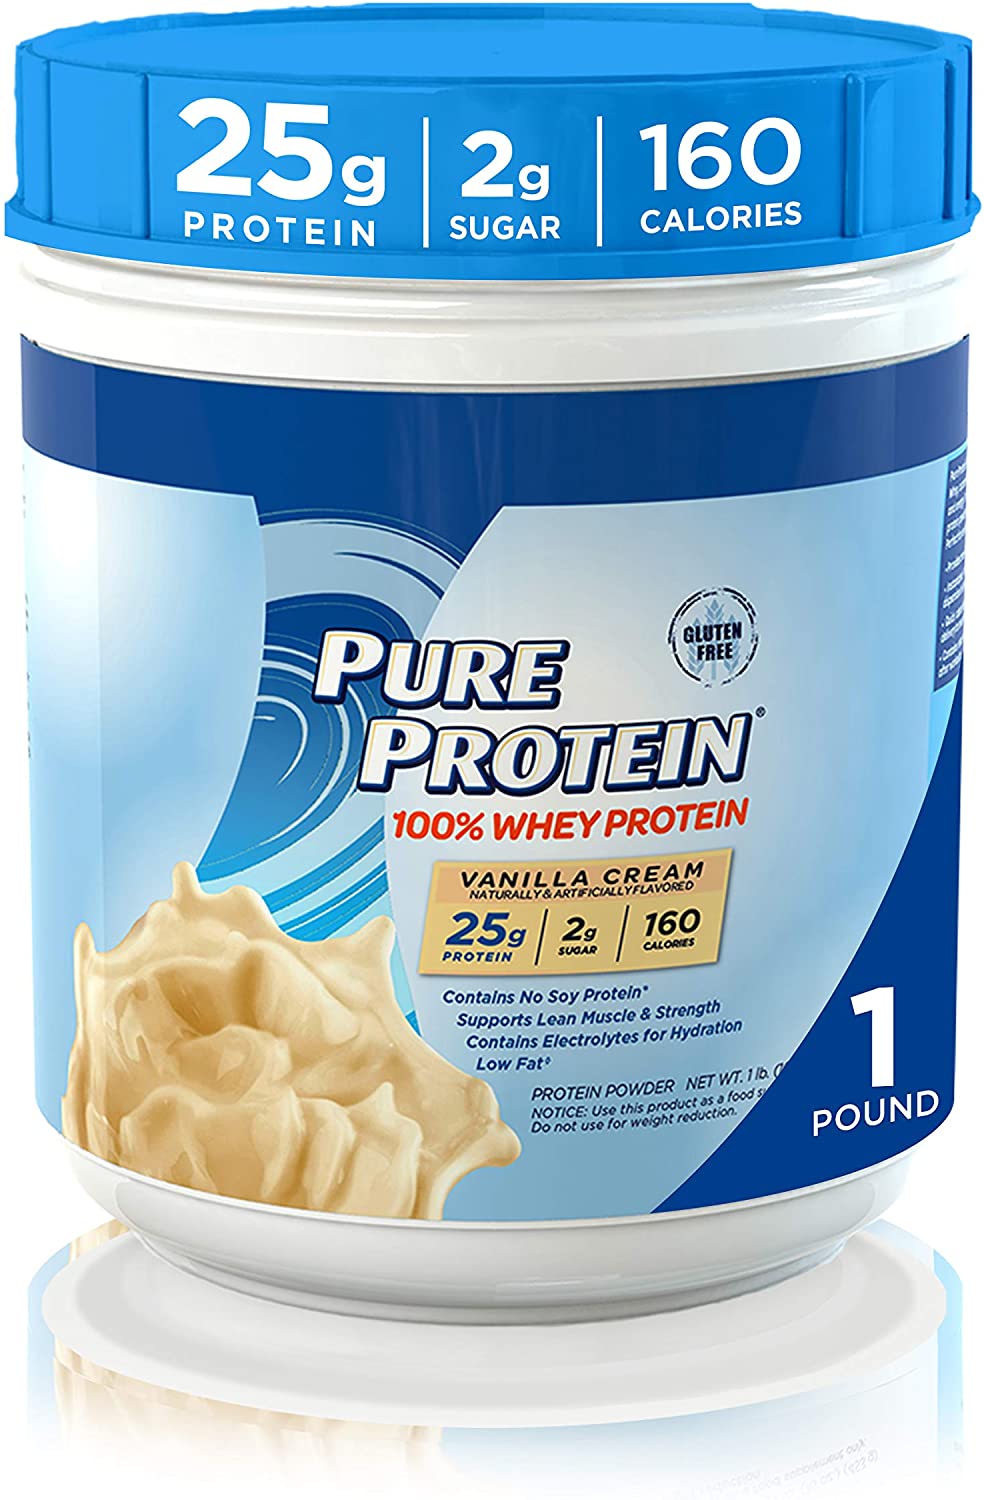 Pure Protein Gluten Free Vanilla Whey Protein Powder, 1-Pound